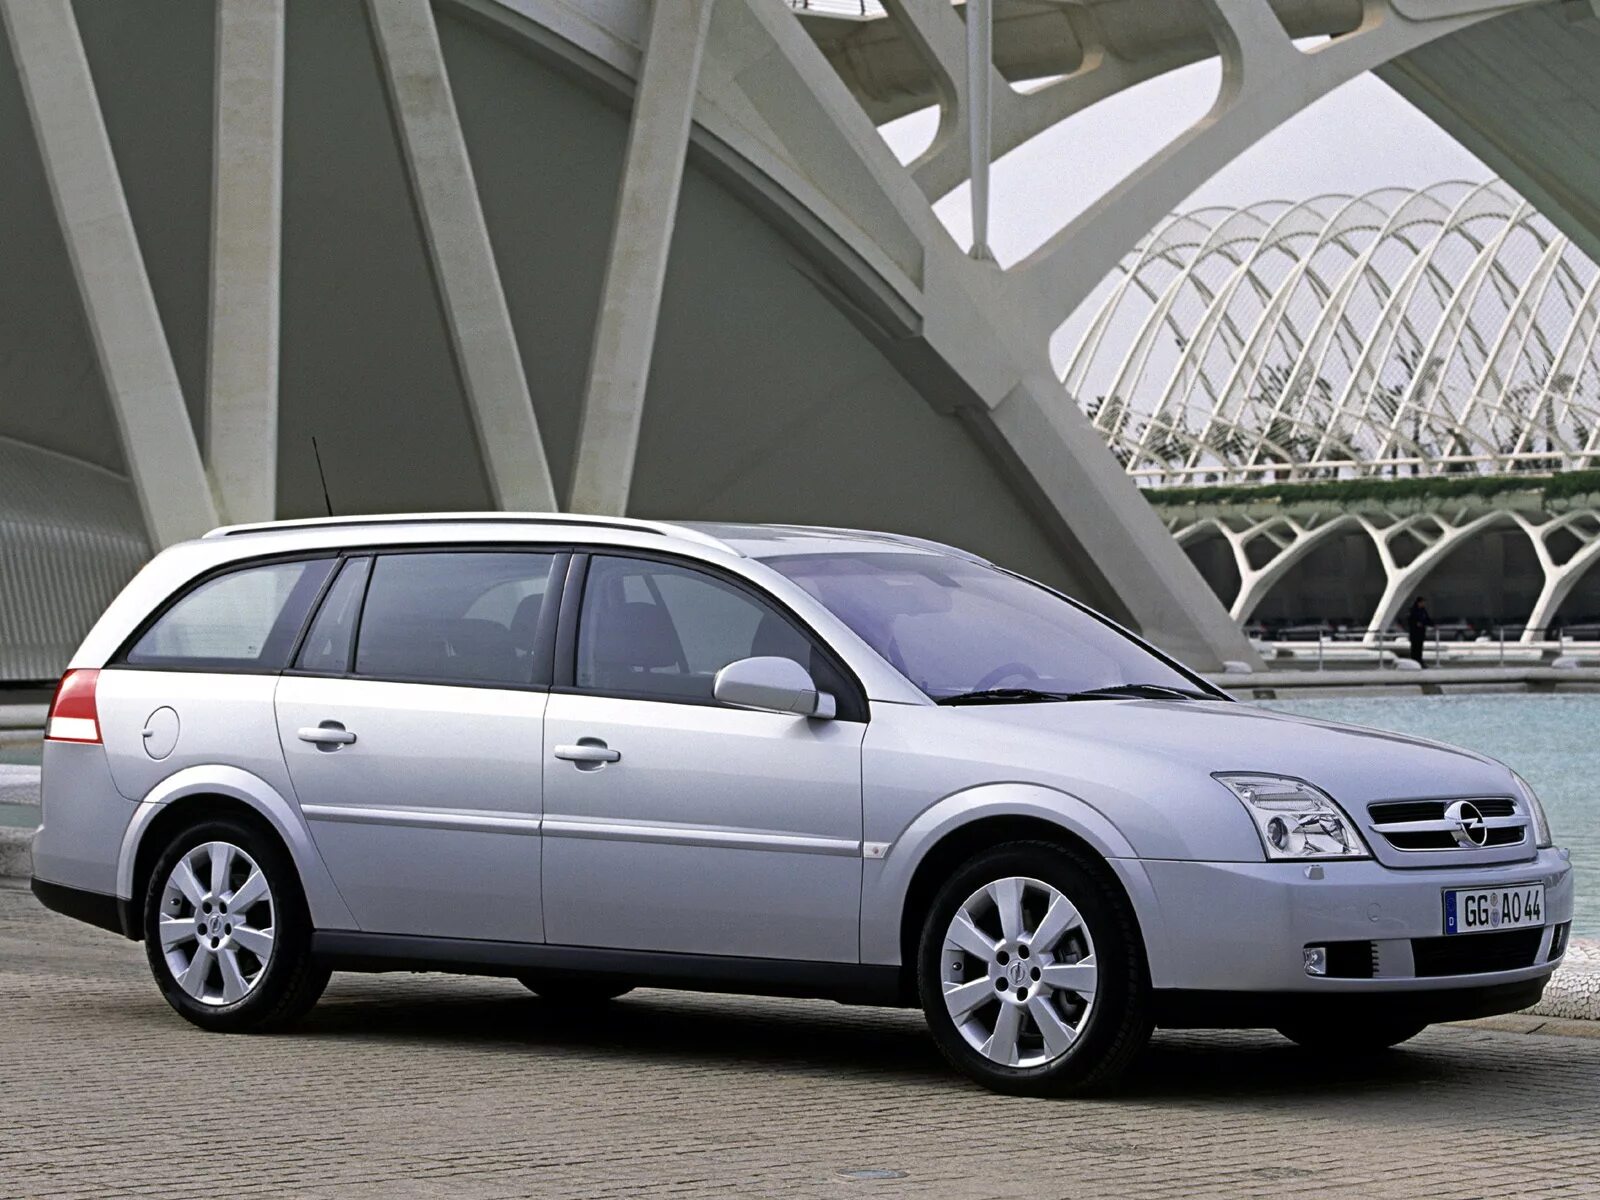 Опель вектра дизель универсал. Опель Вектра 2004 универсал. Opel Vectra c 2003 универсал. Opel Vectra c 2004 универсал. Опель Вектра с 2005 универсал.